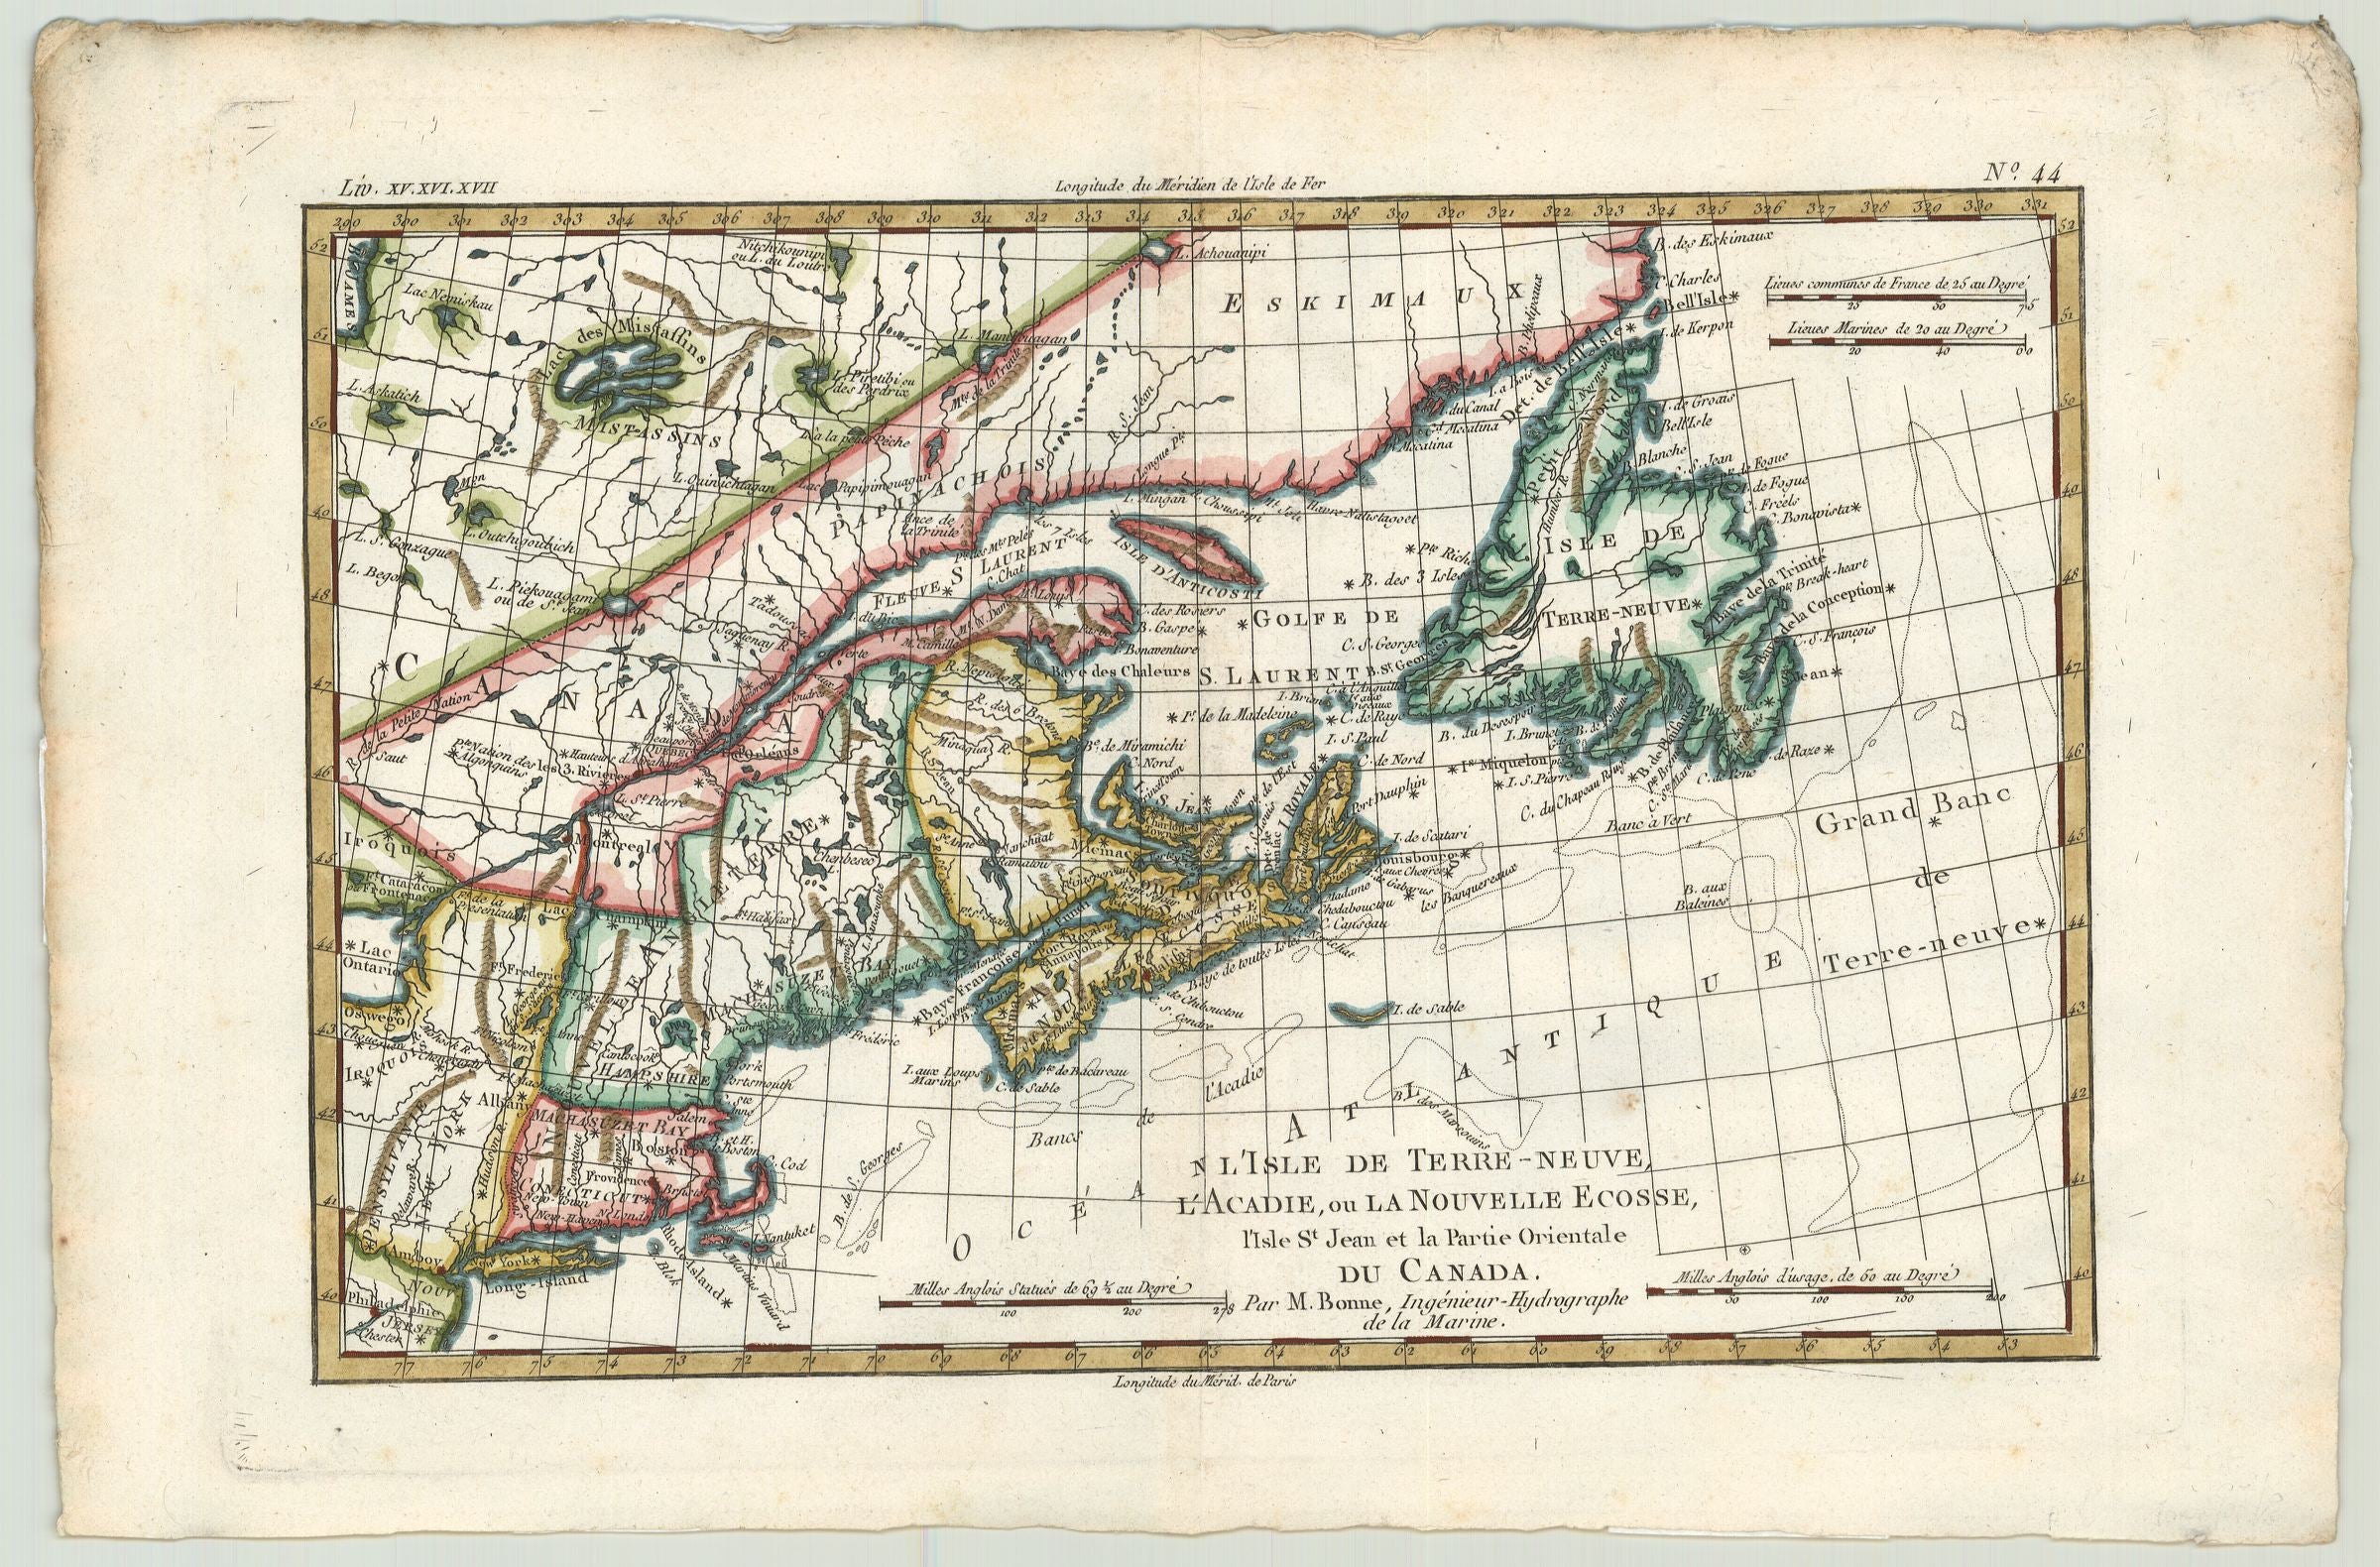 Kanada im Jahr 1782 von Rigobert Bonne